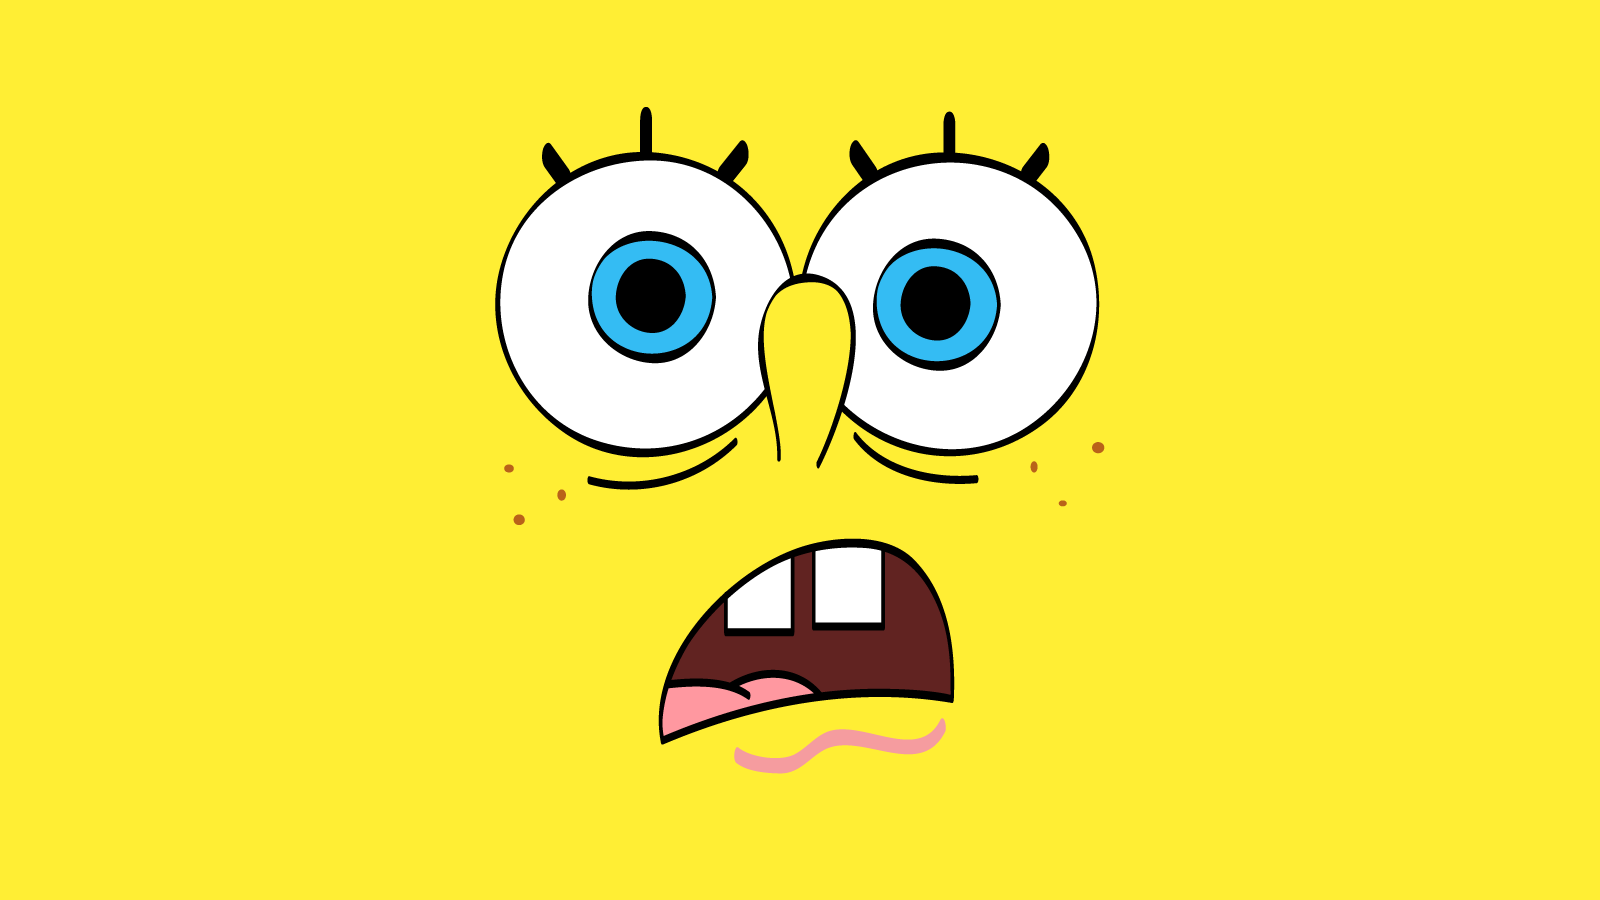 Best Spongebob Faces : Spongebob Squarepants Graffiti By Iaciofano ...